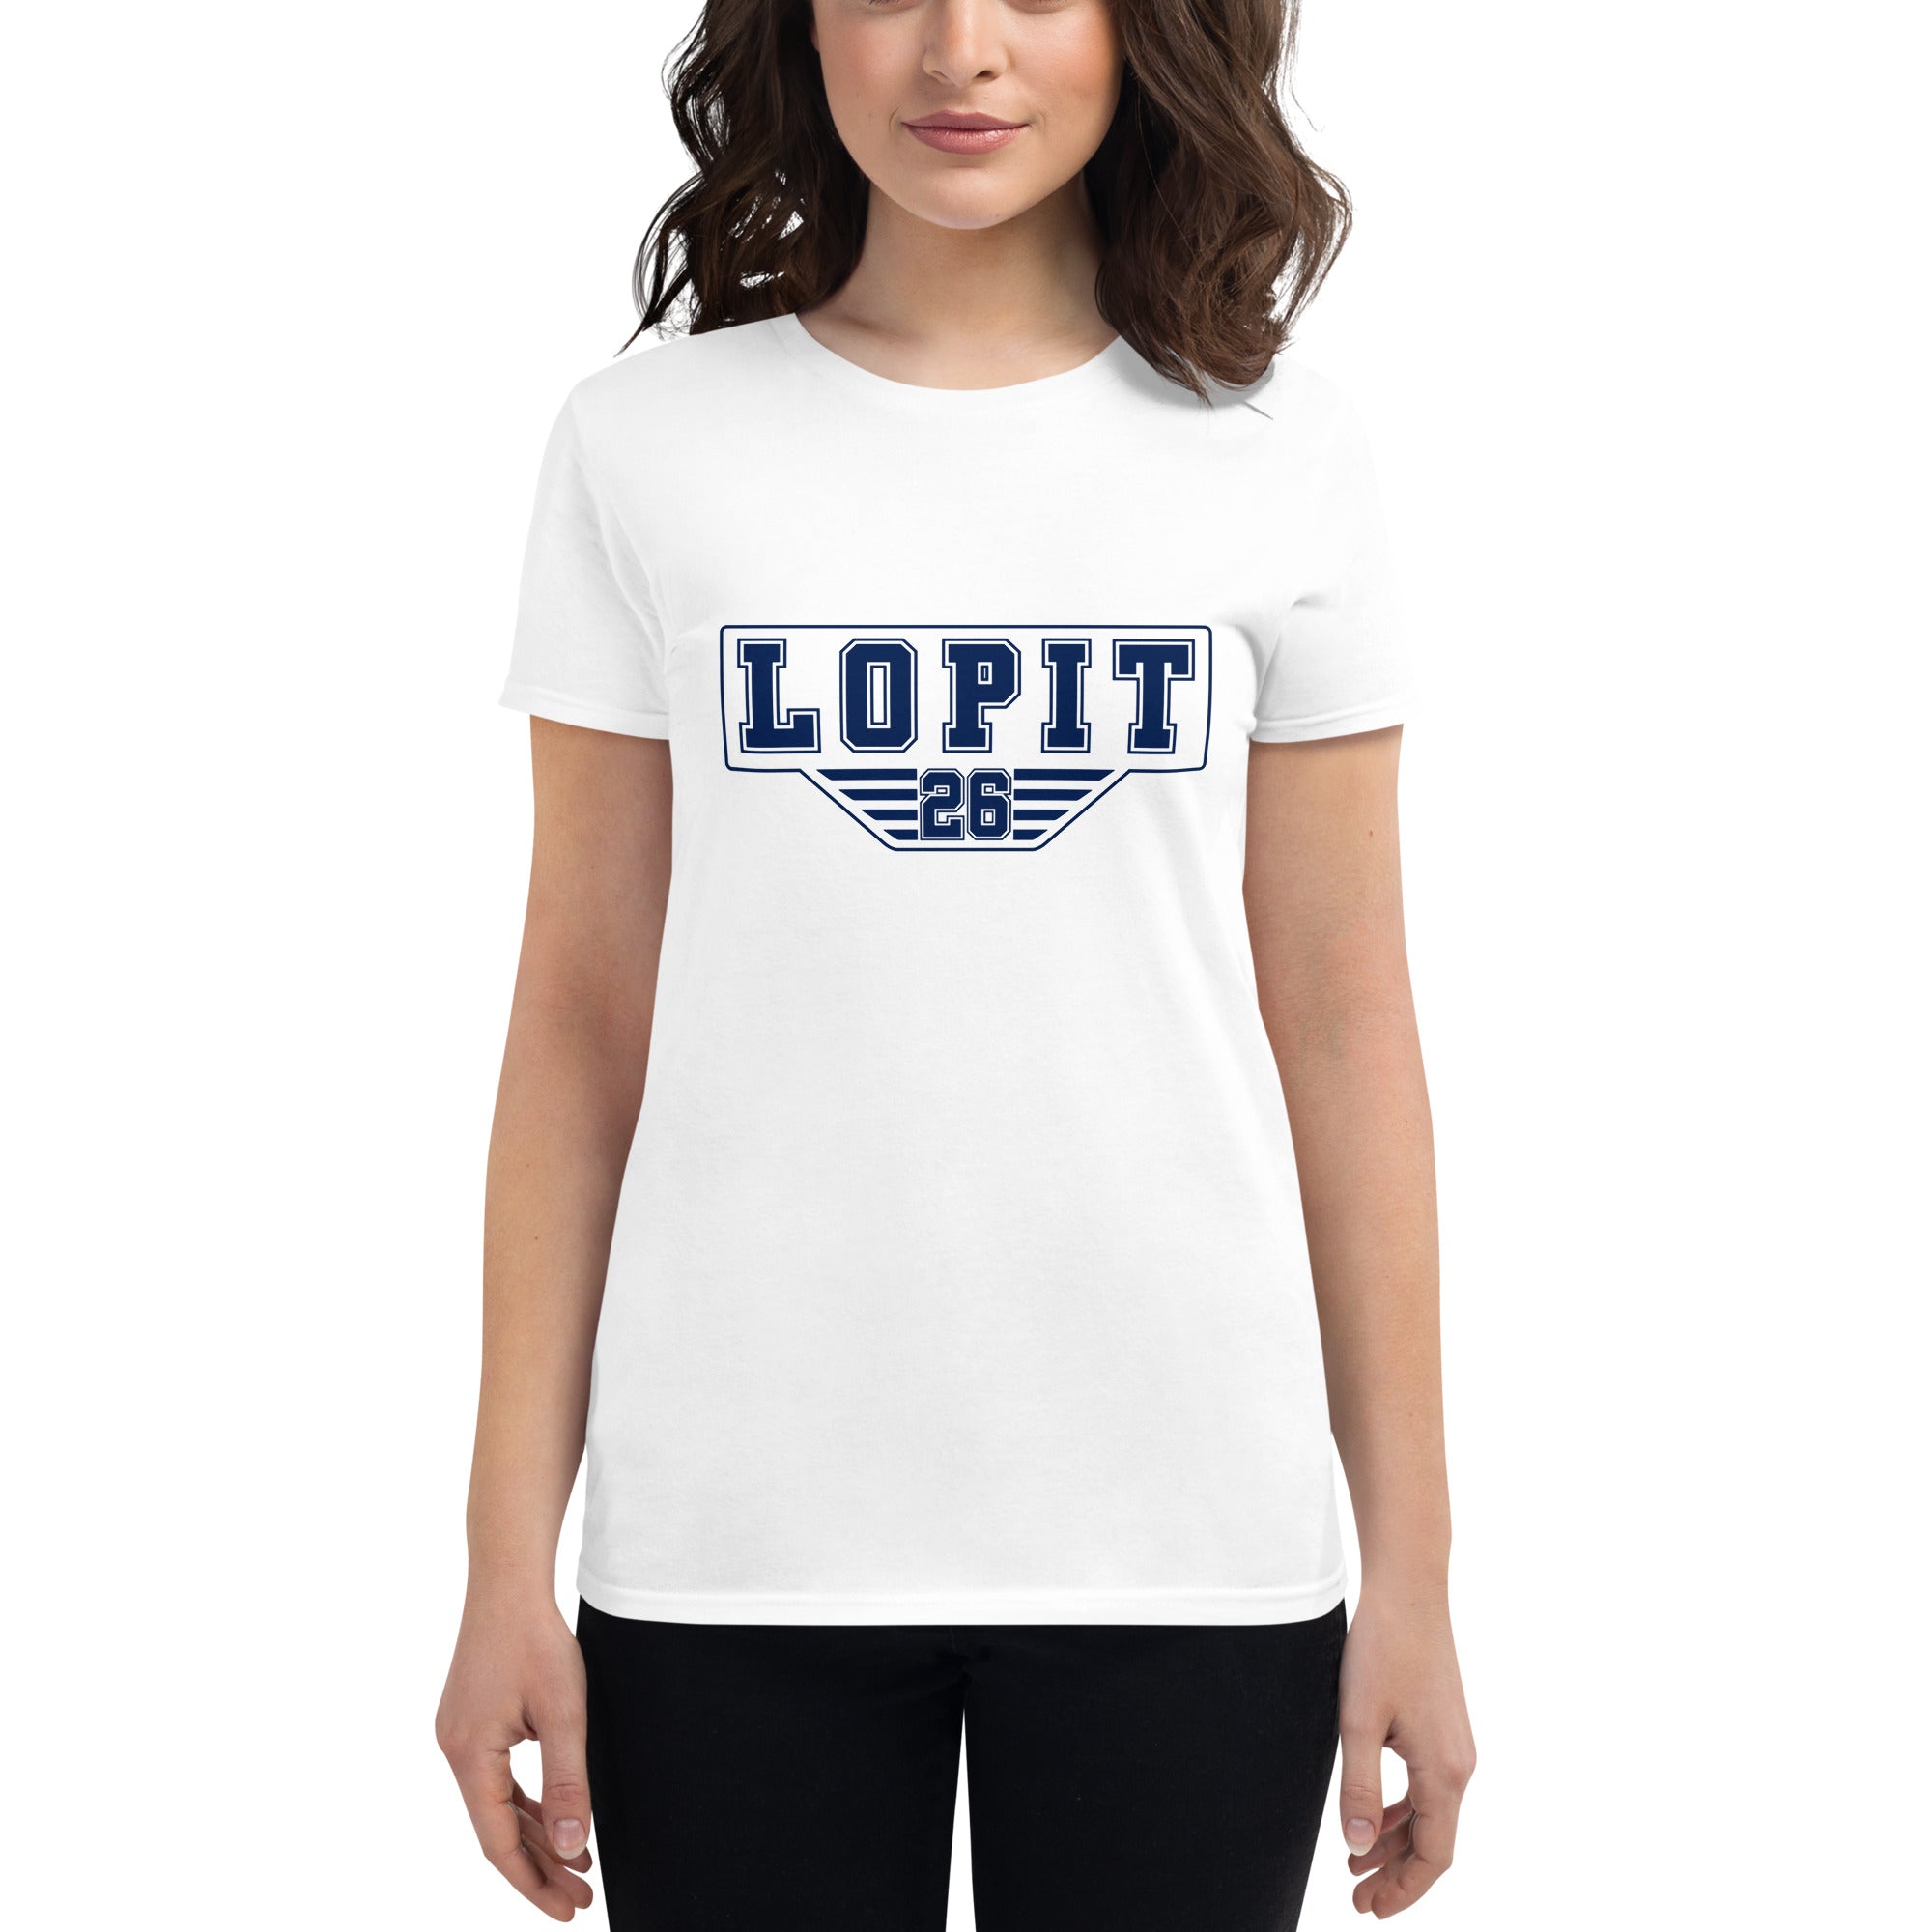 Lopit #26 - Women's short sleeve t-shirt